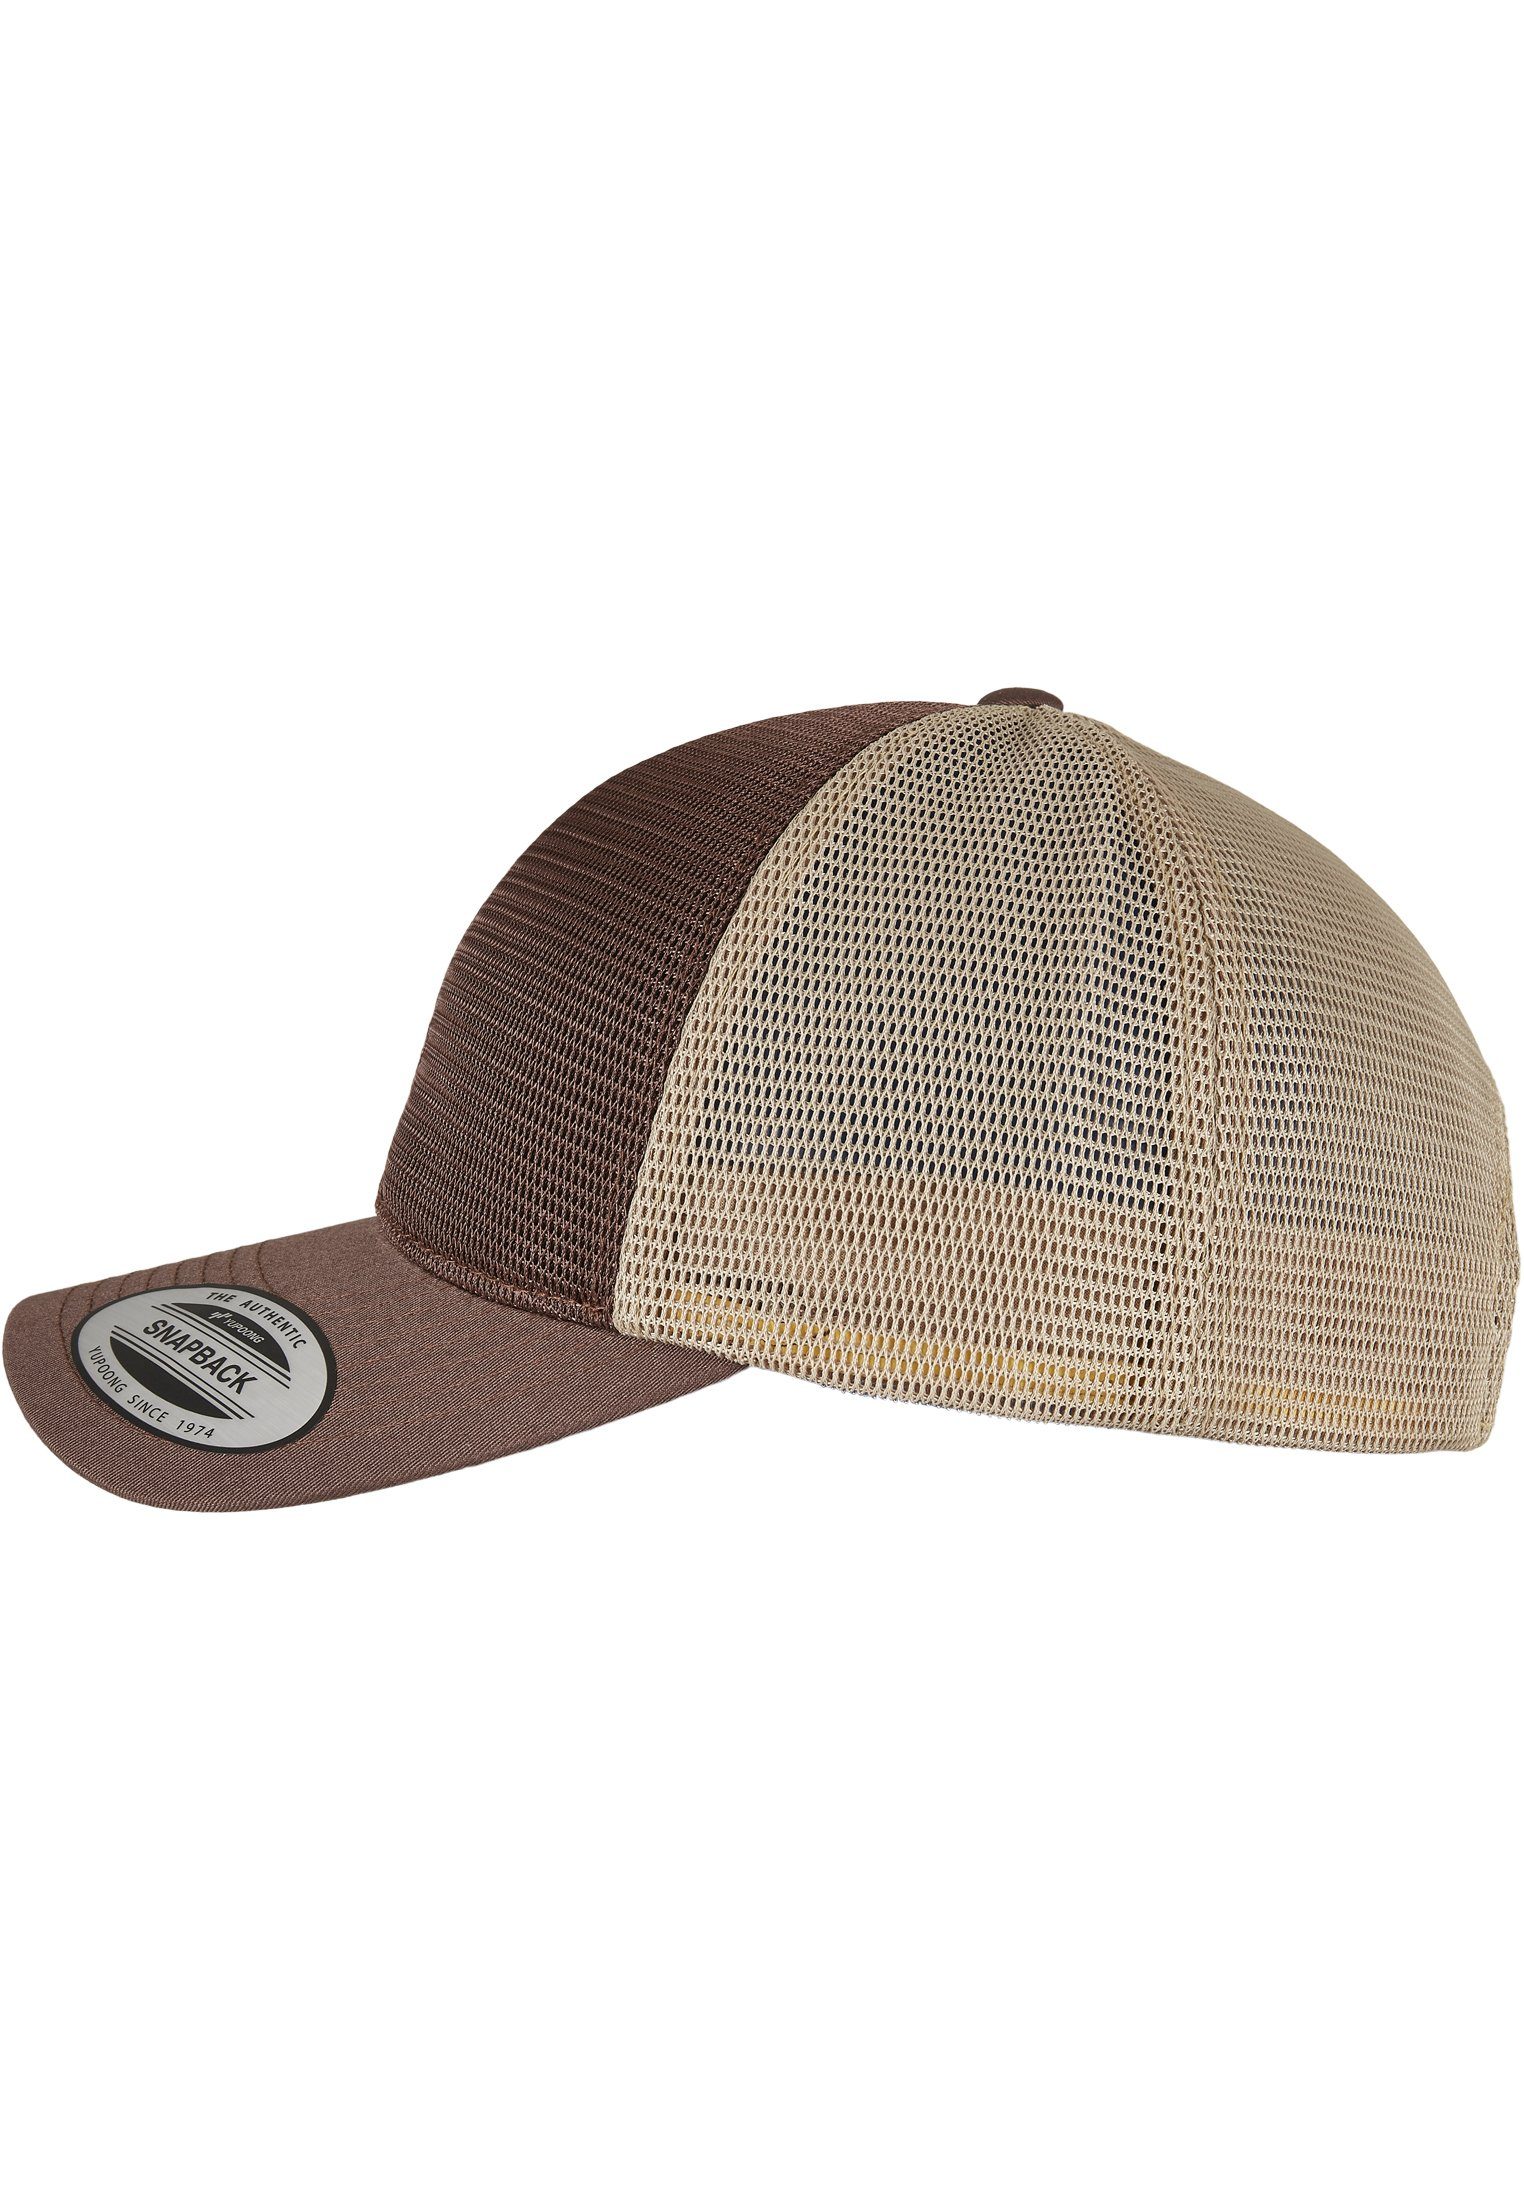 Flexfit Flex Cap 360° brown/khaki Accessoires 2-Tone Cap Omnimesh